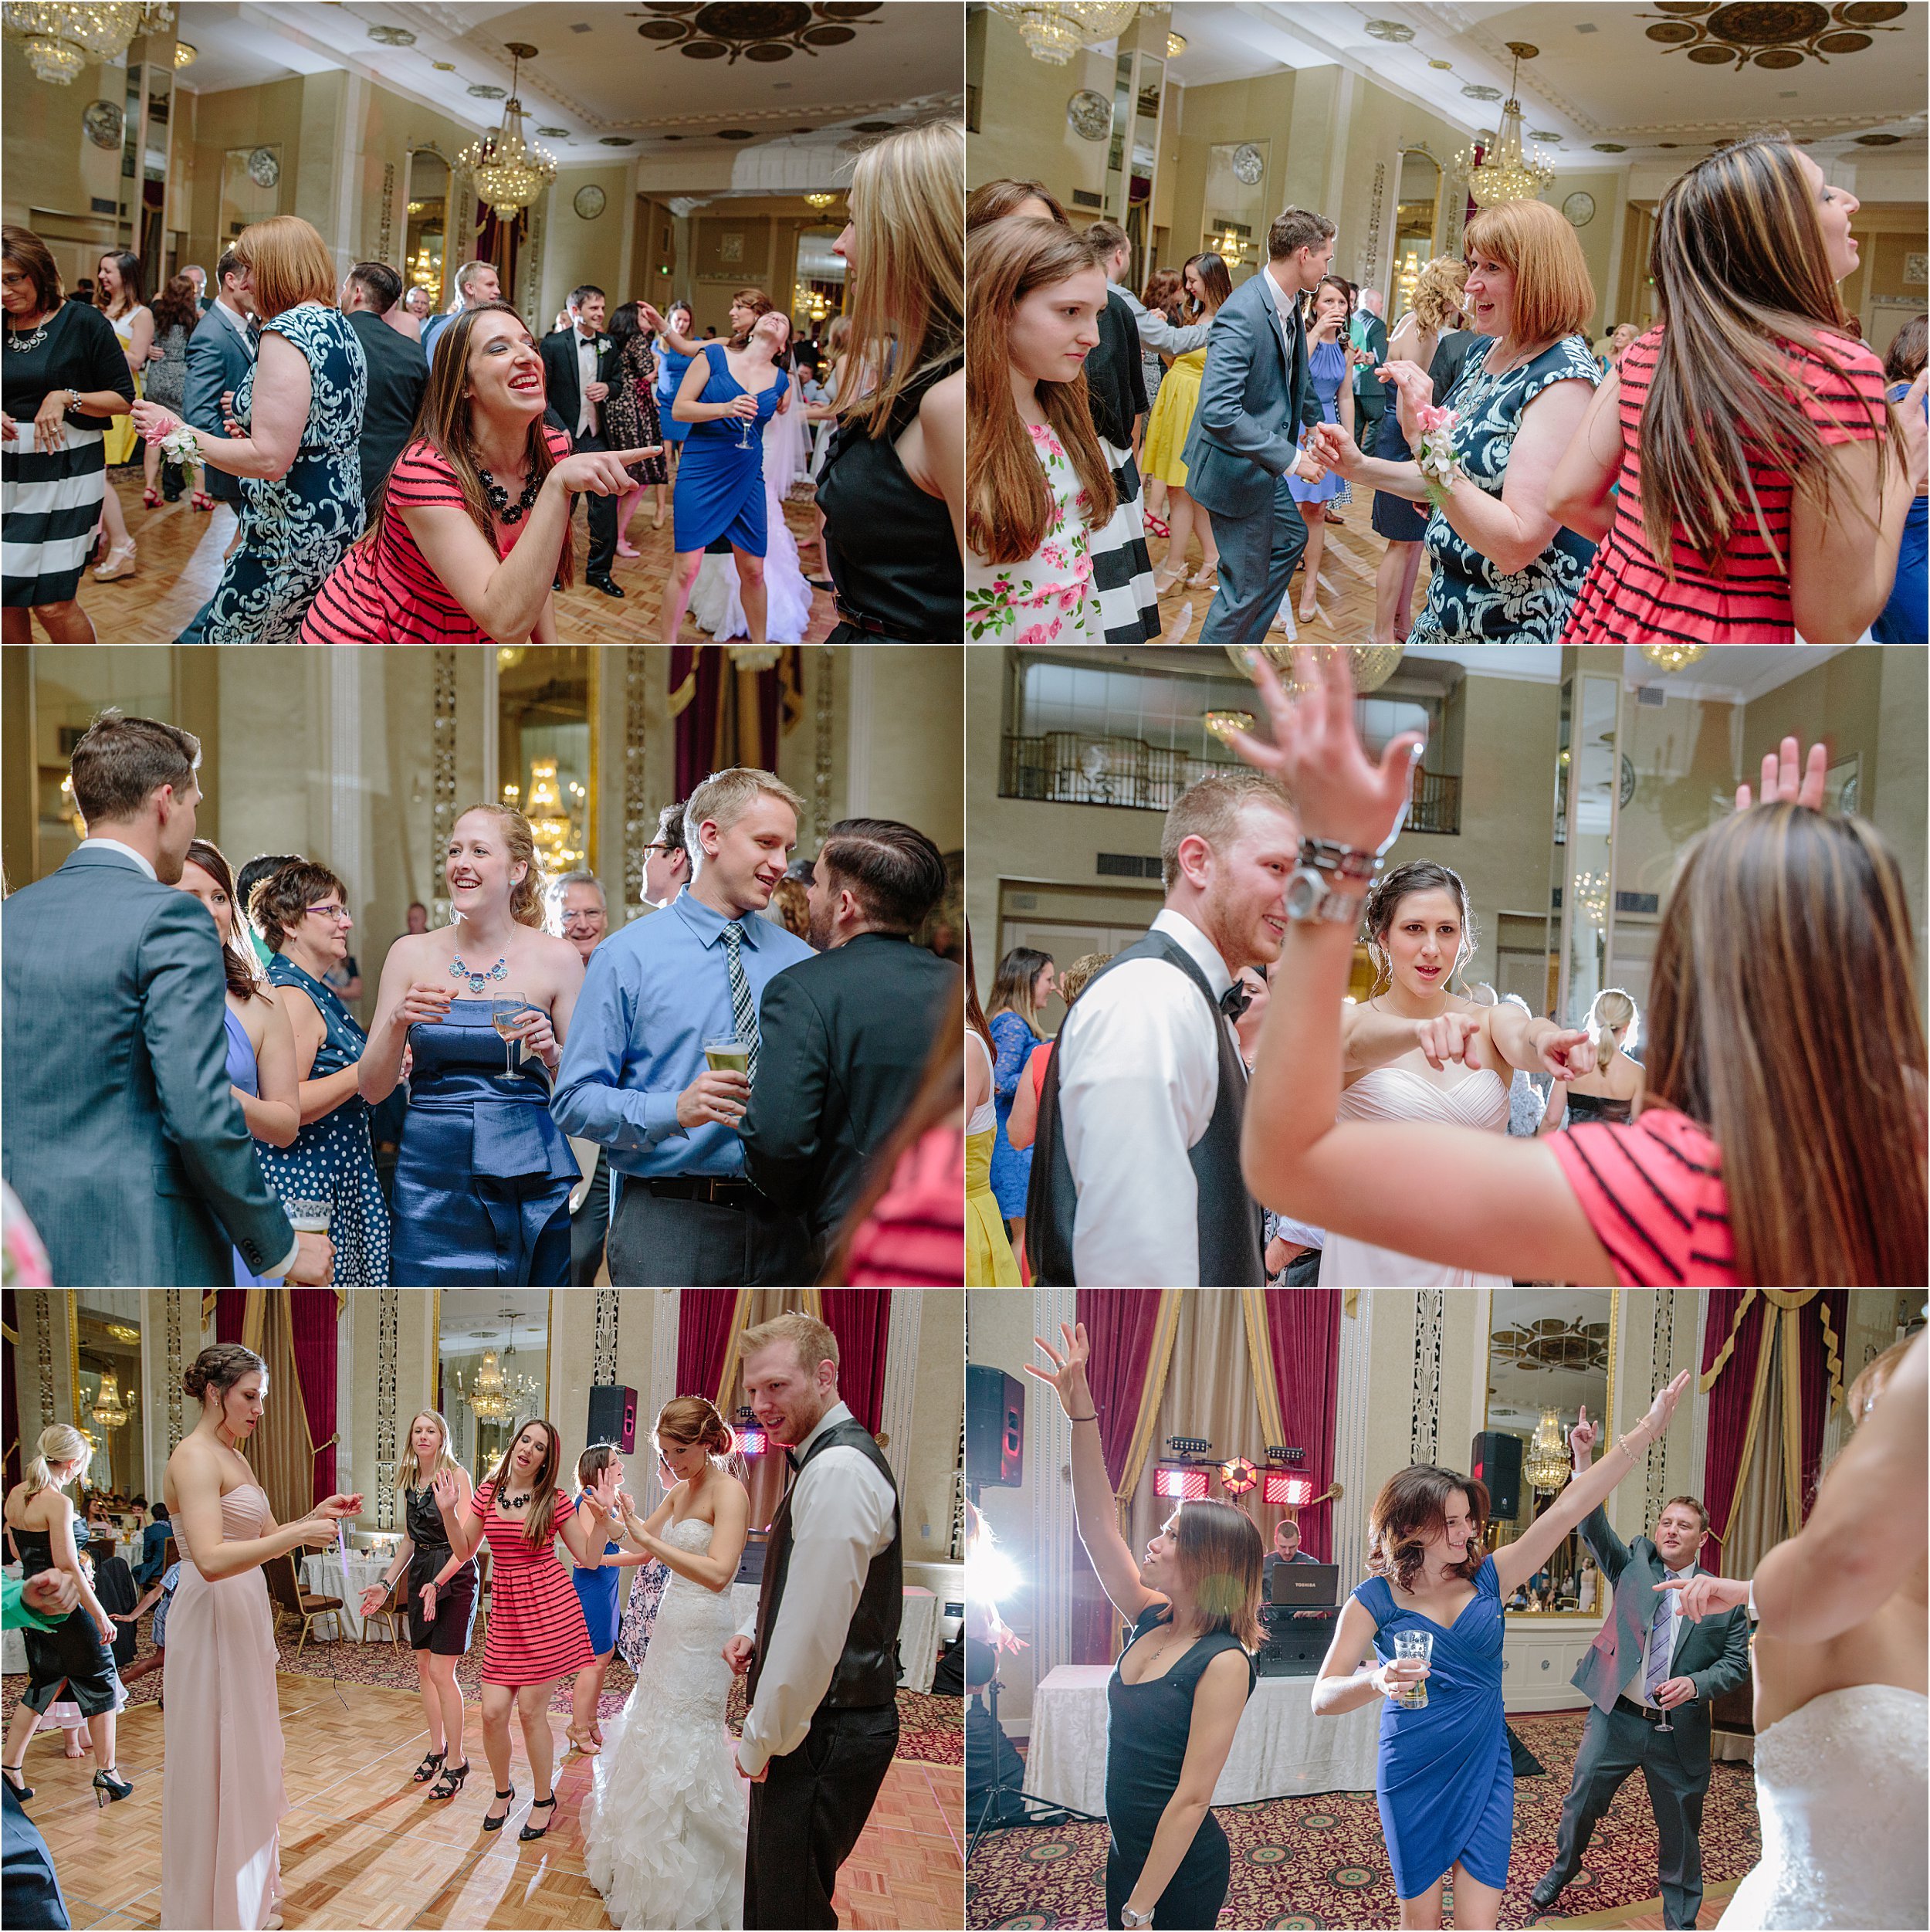 39-dancing-wedding-guests.JPG